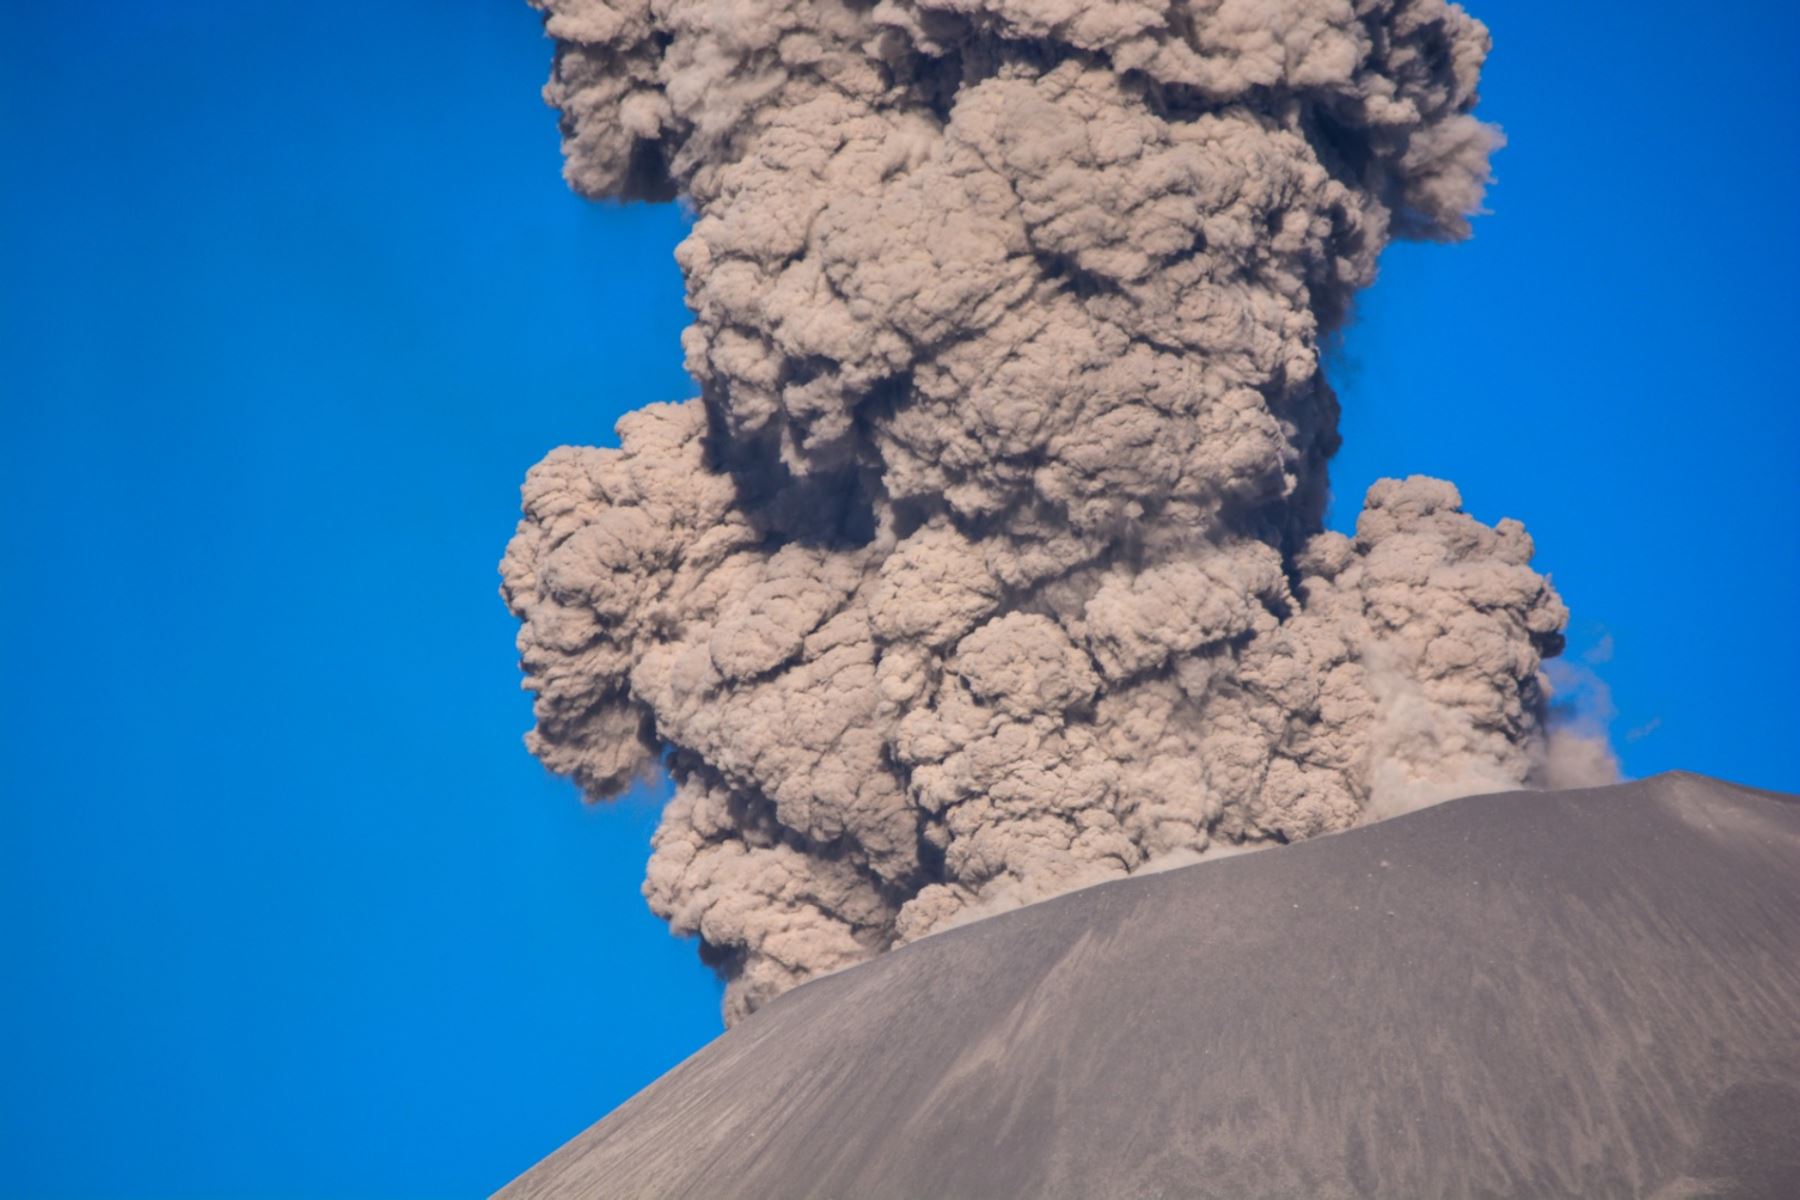 Investigación del IGP revela la dinámica sísmica y eruptiva en la zona del Sabancaya y alrededores desde 2013, año en el que se inició la intranquilidad de este volcán, hasta 2020. Foto: IGP